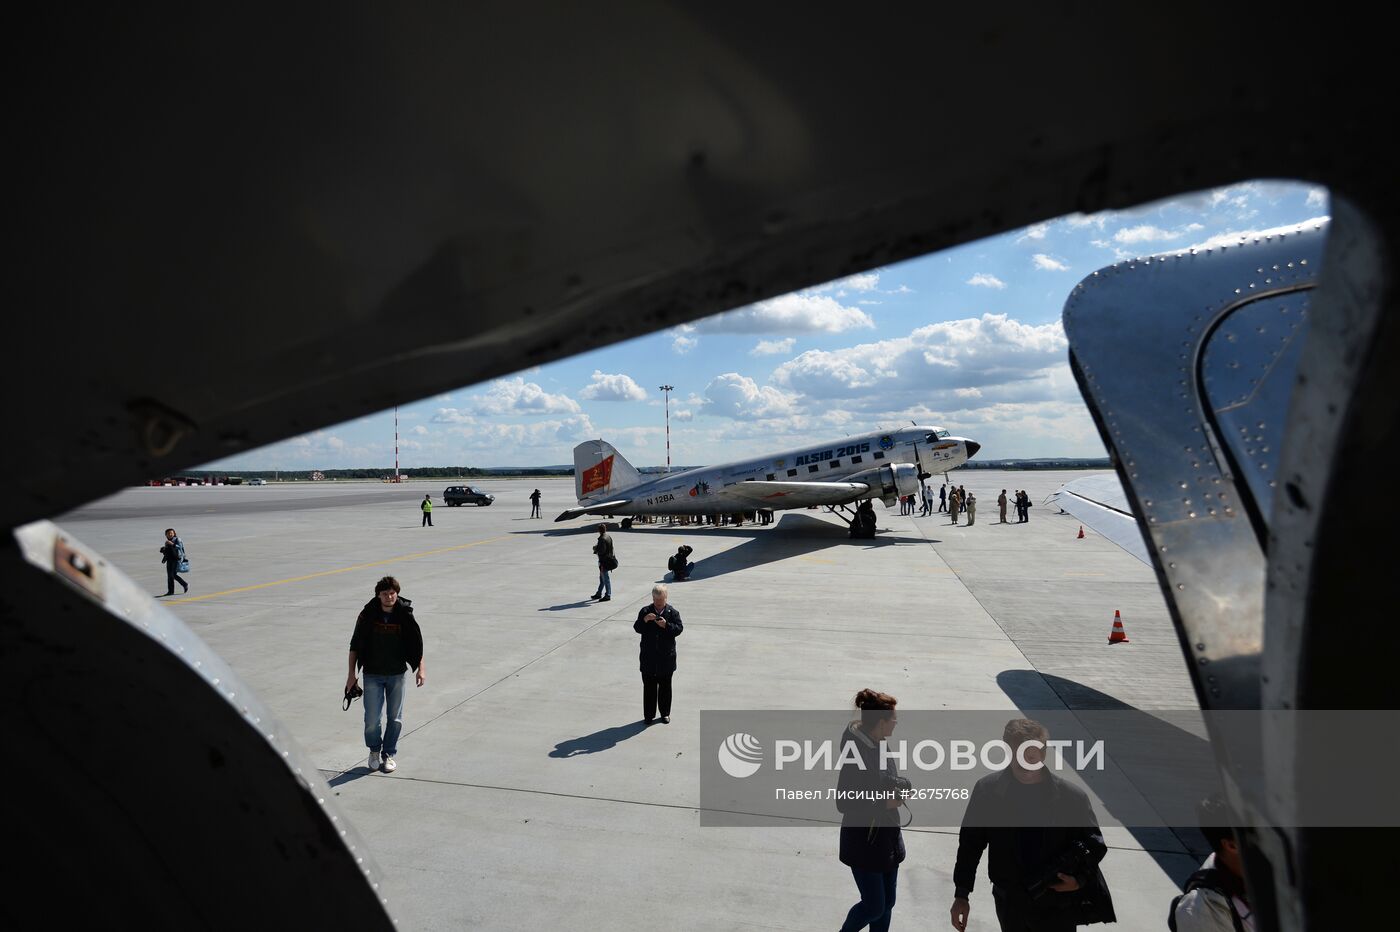 Прибытие участников российско-американского проекта "Аляска-Сибирь 2015" в аэропорт "Кольцово"